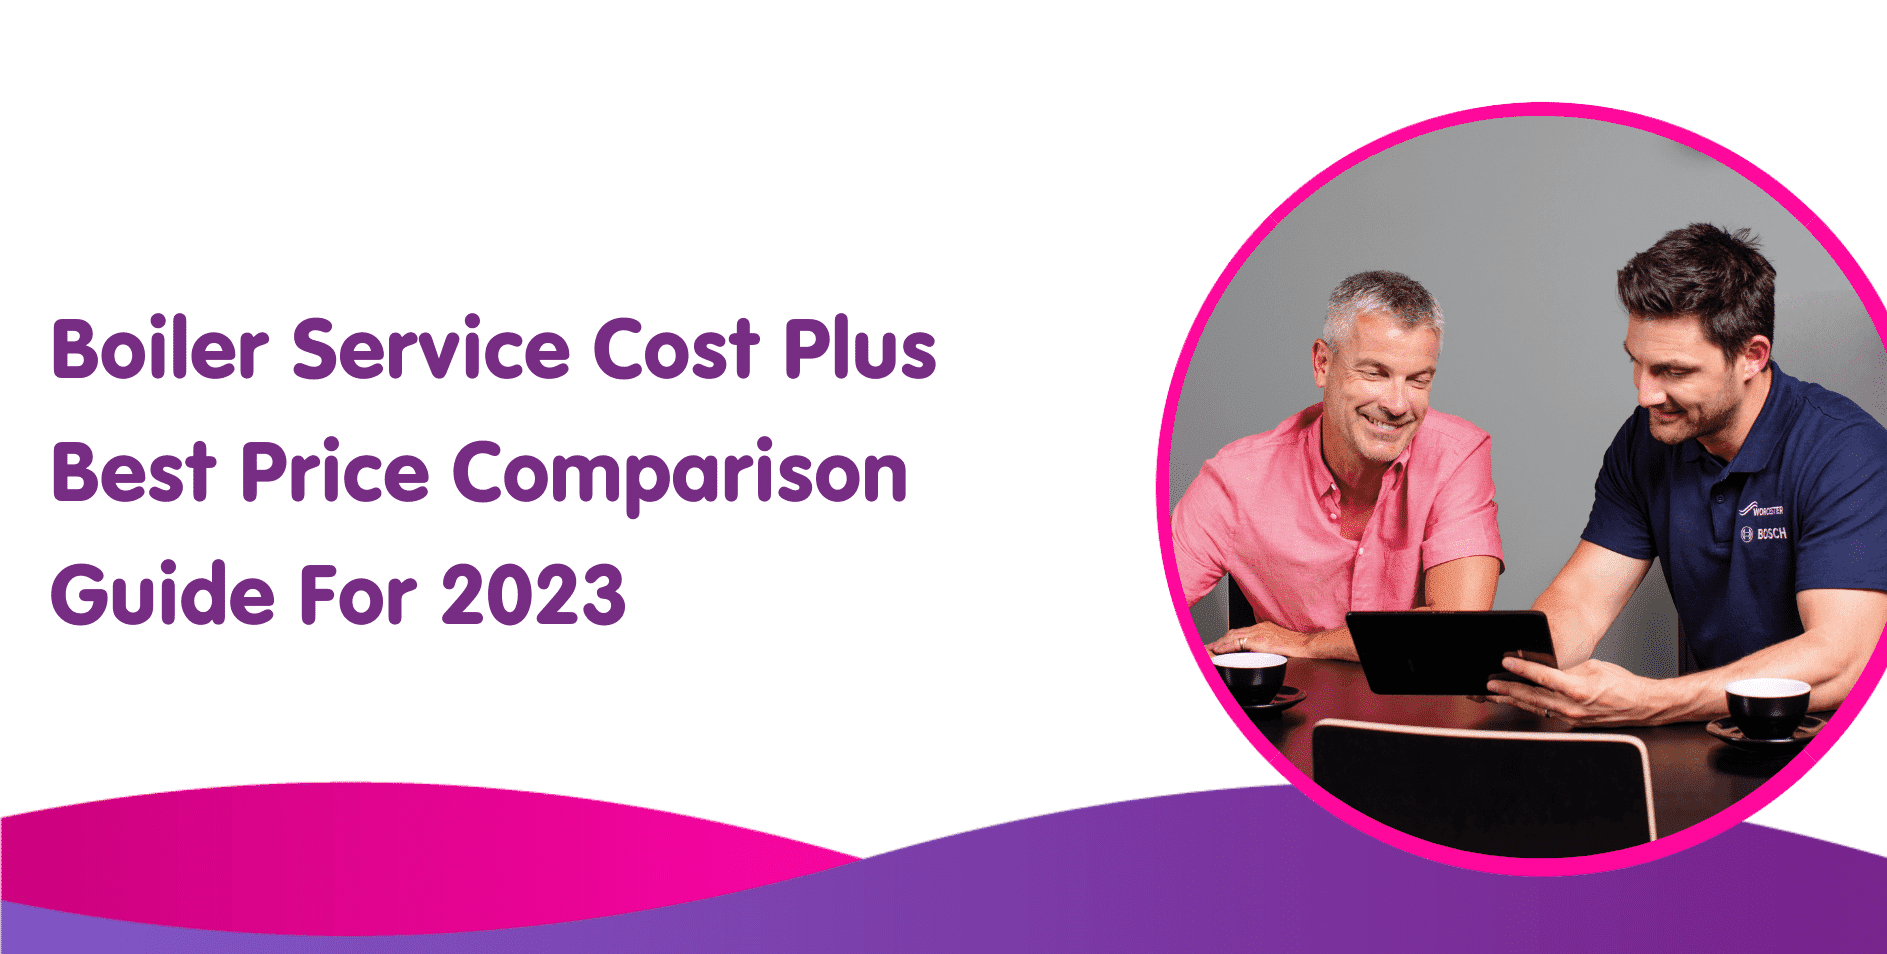 Boiler Service Cost Plus Best Price Comparison Guide For 2023